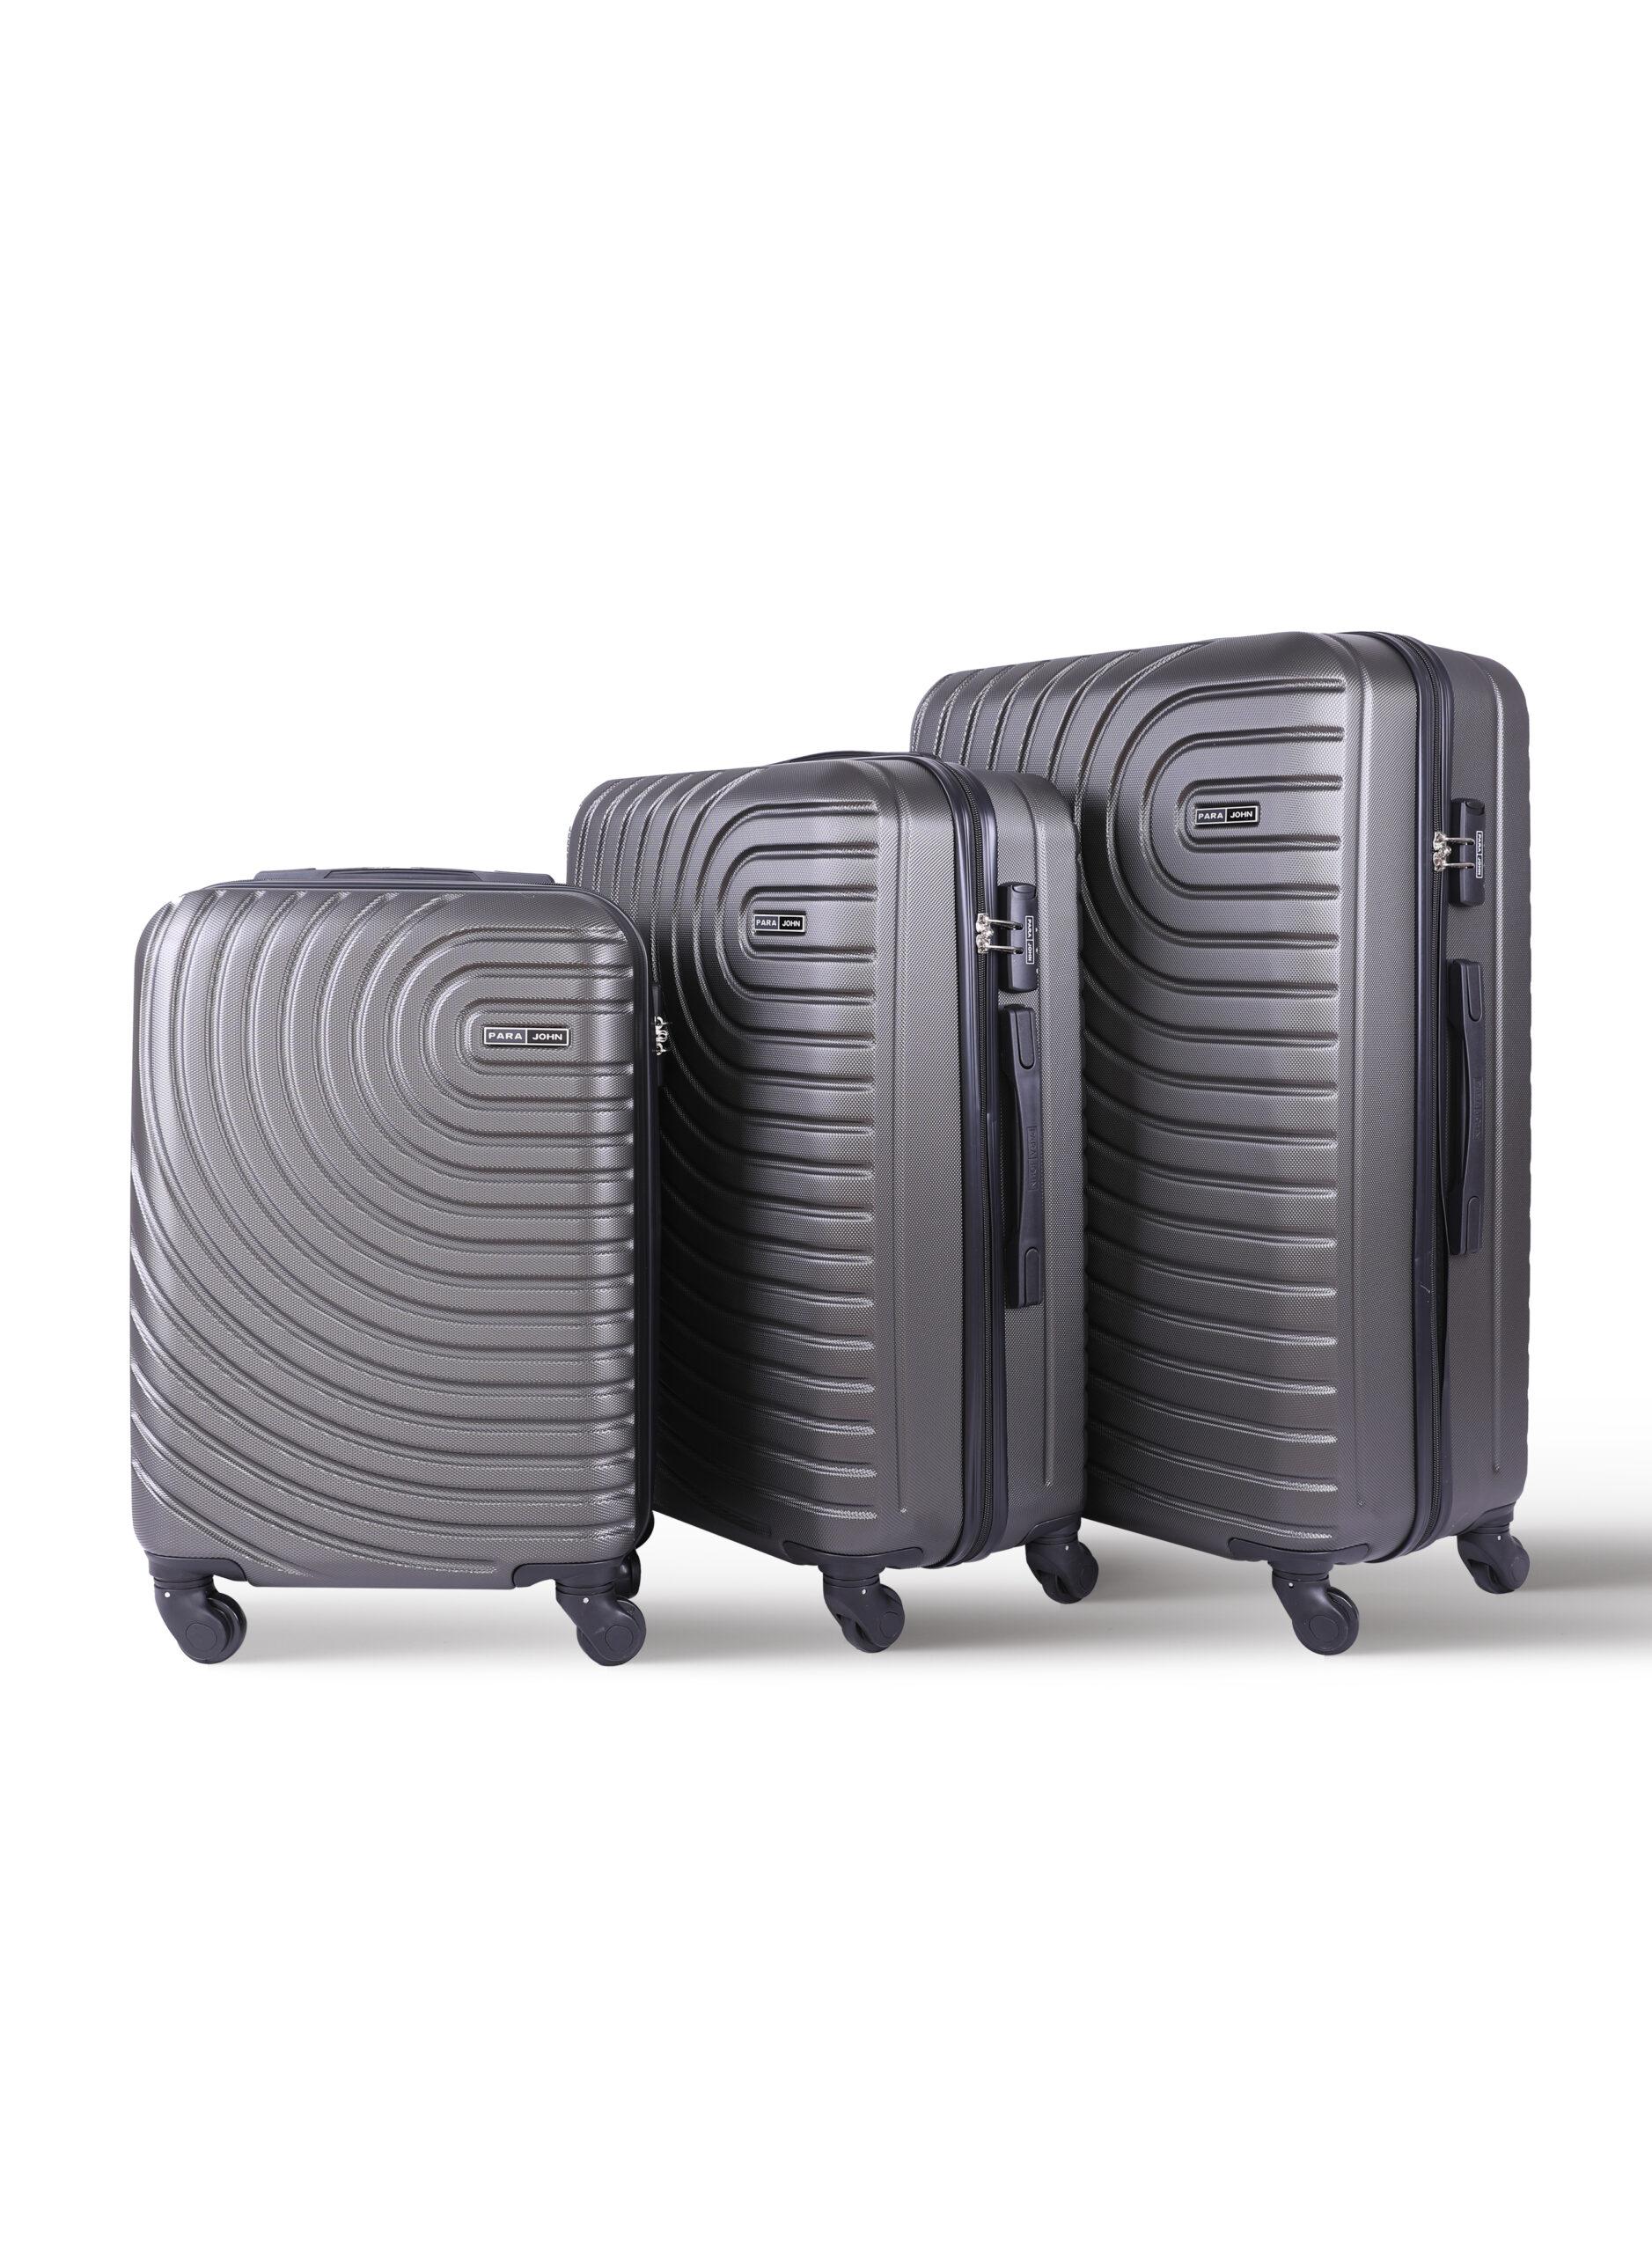 مجموعة شنط سفر 3 قطع قياس 20 و 24 و 28 بوصة لون رمادي PARA JOHN 3-Piece Hard side ABS Luggage Trolley Set